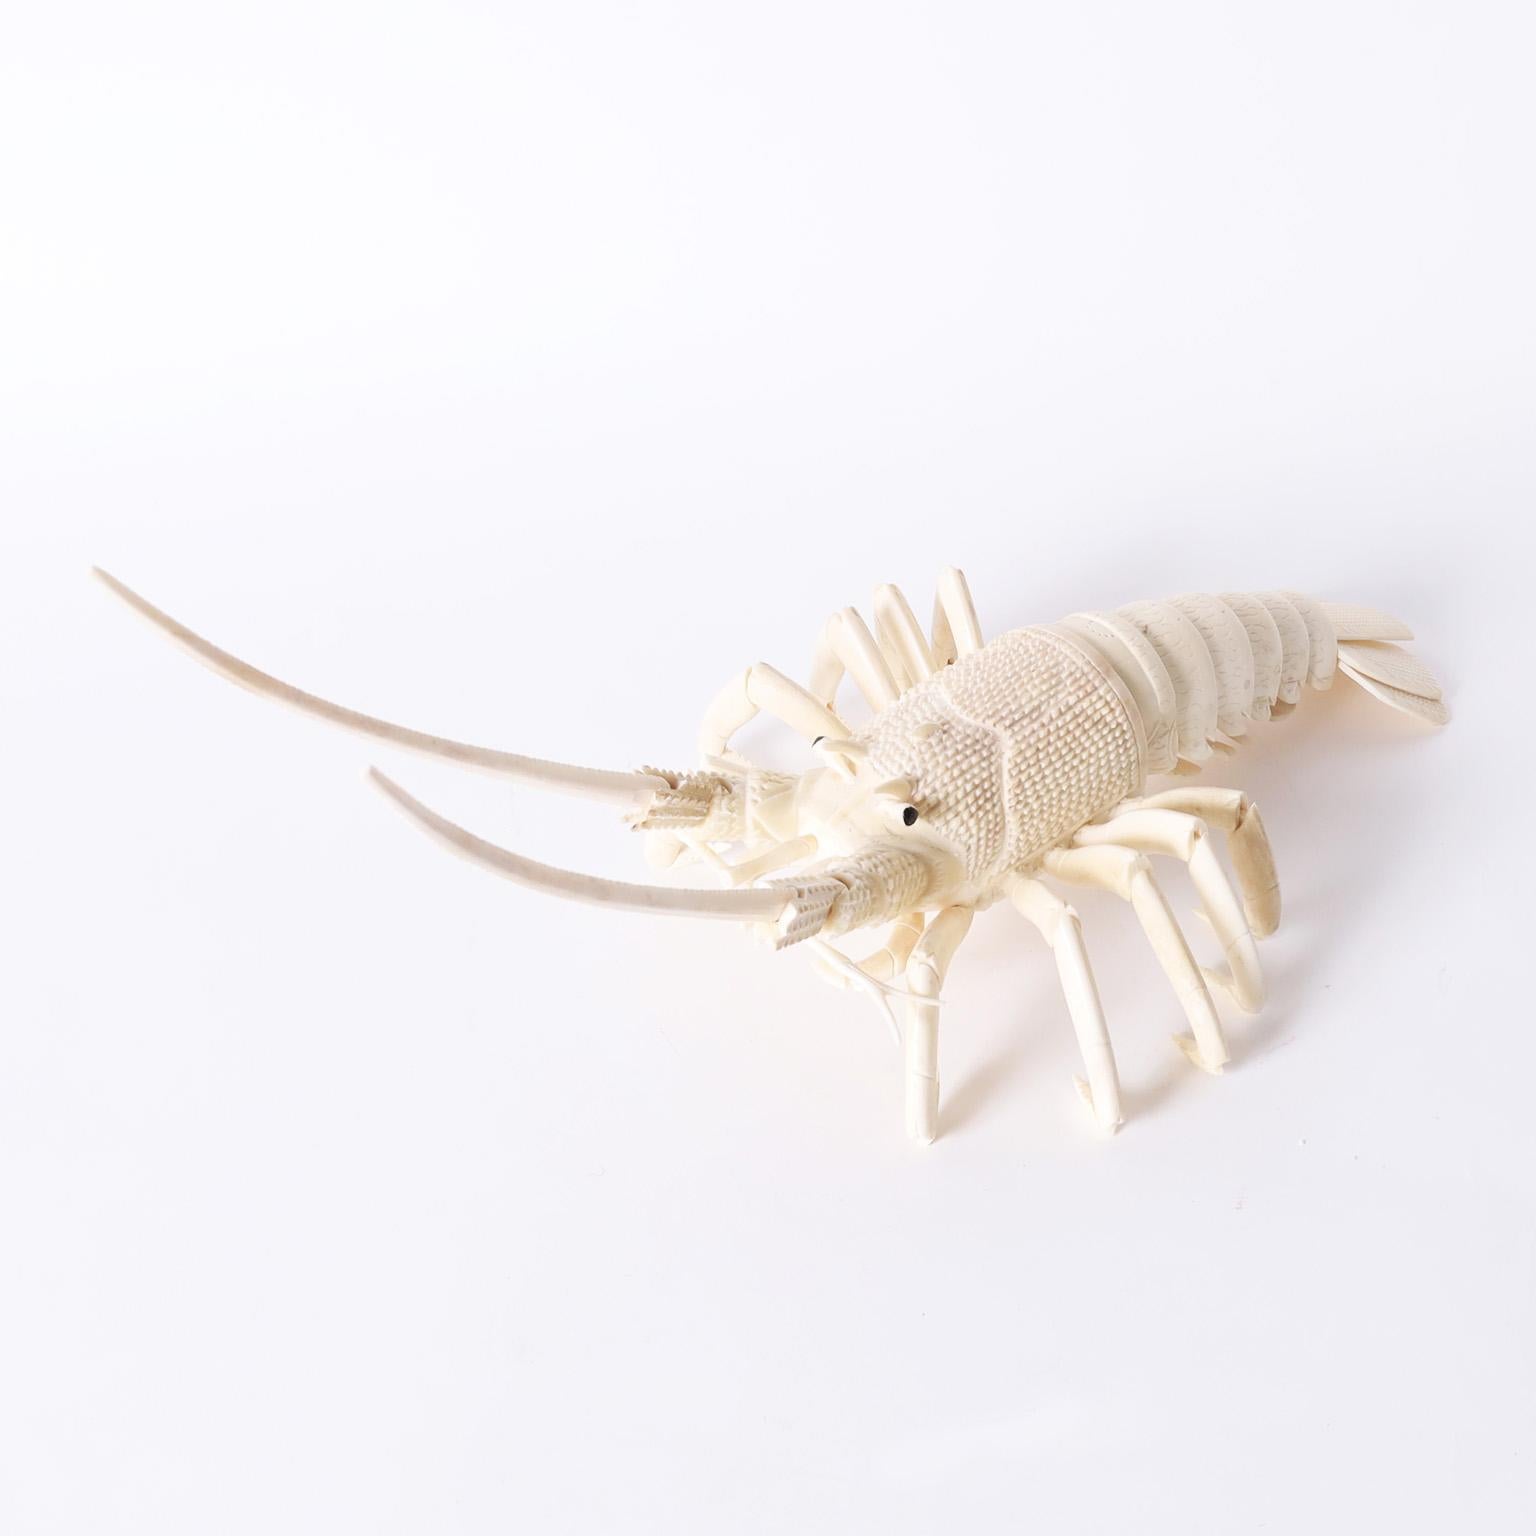 Grande sculpture de homard articulée ou objet d'art en os sculpté, avec antennes articulées et queue flexible.